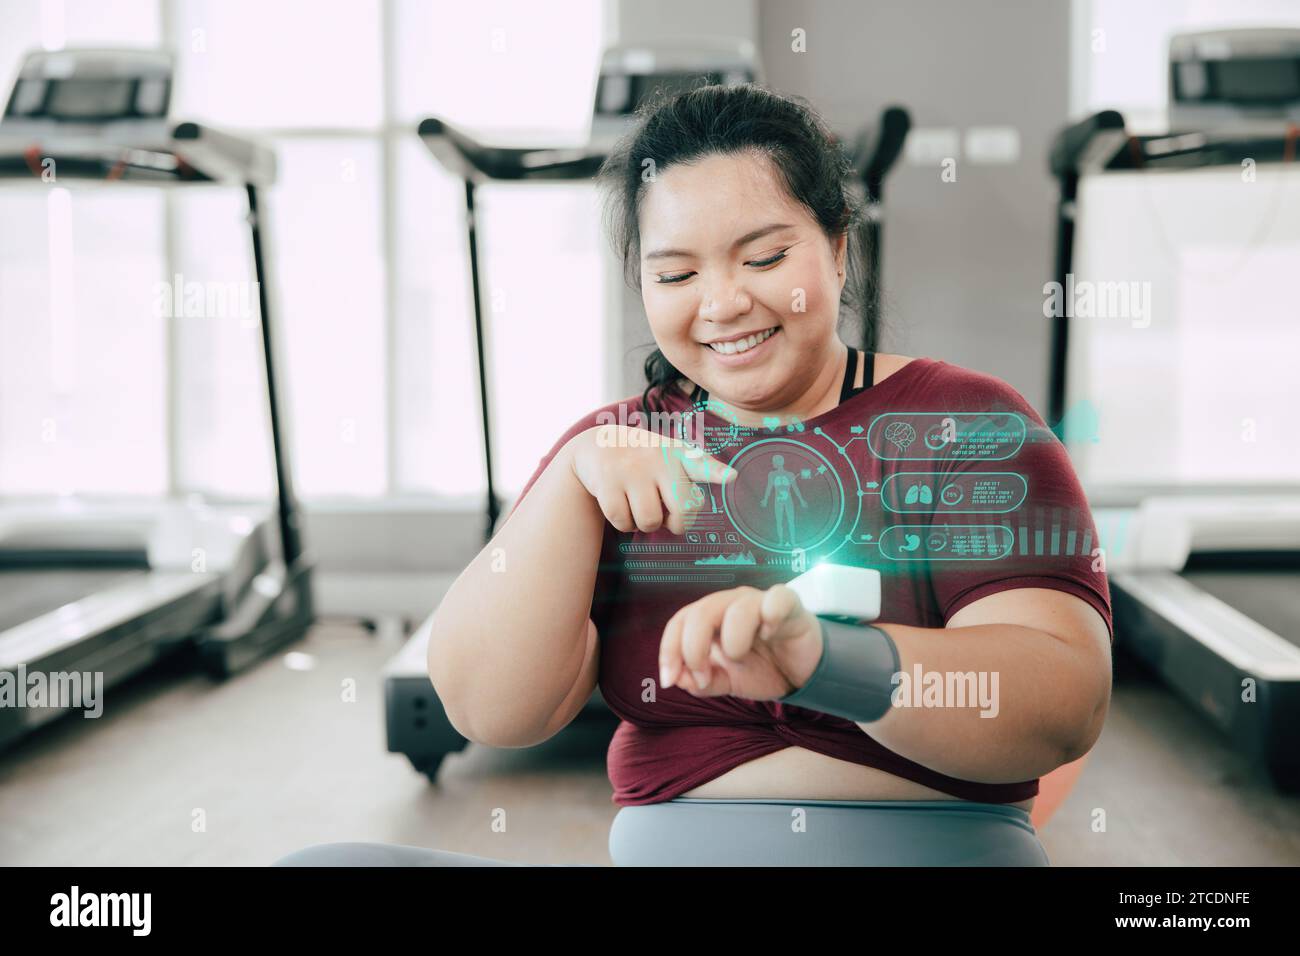 les femmes graisseuses saines et heureuses utilisent des trackers de fitness de dispositif de technologie scientifique portable intelligents affichent des informations d'aperçu d'activité de corps d'hologramme. Banque D'Images